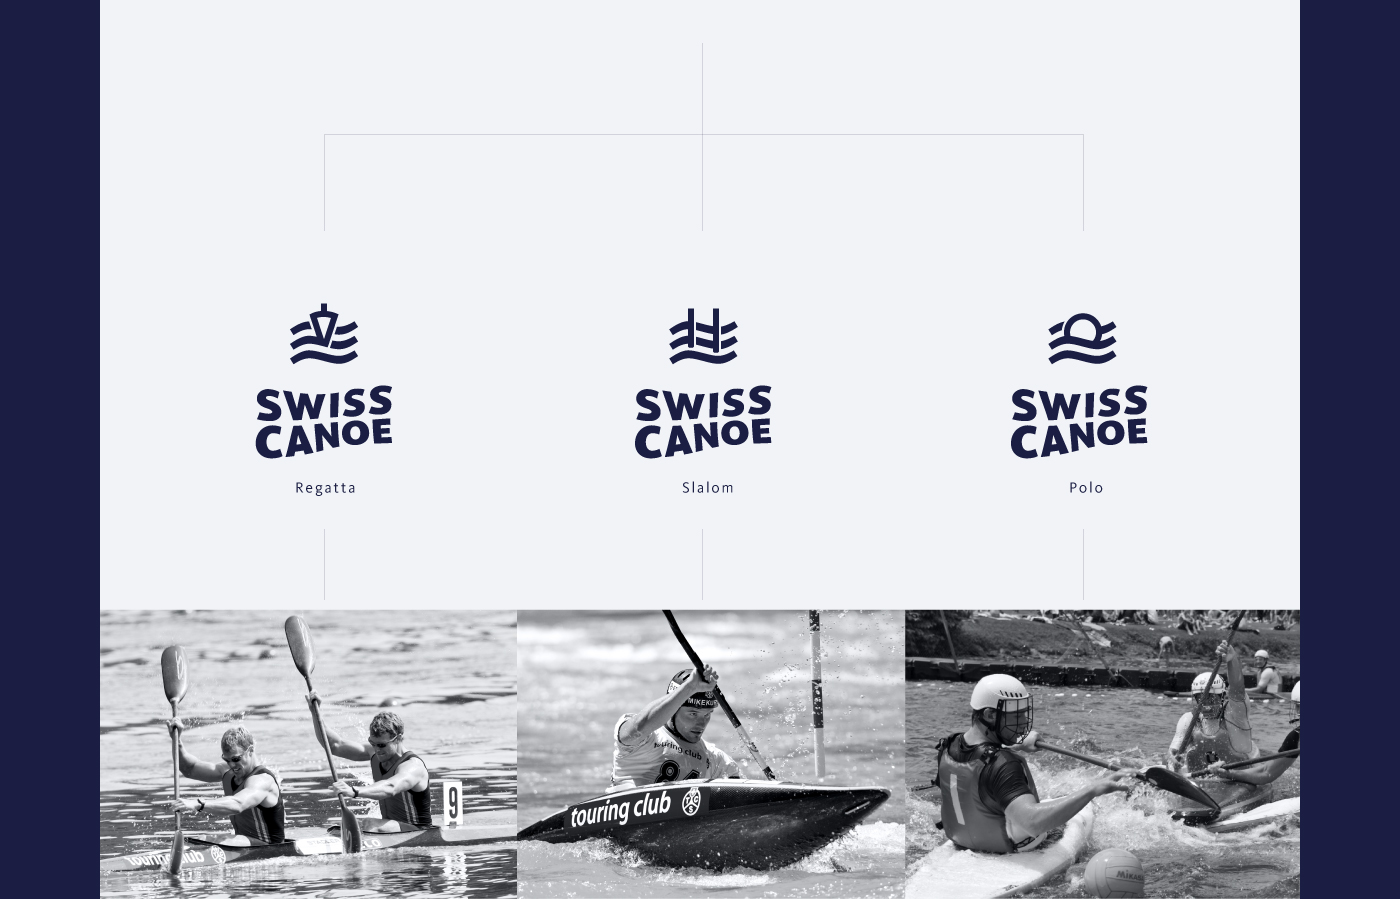 canoe swiss sport kayak water national Switzerland